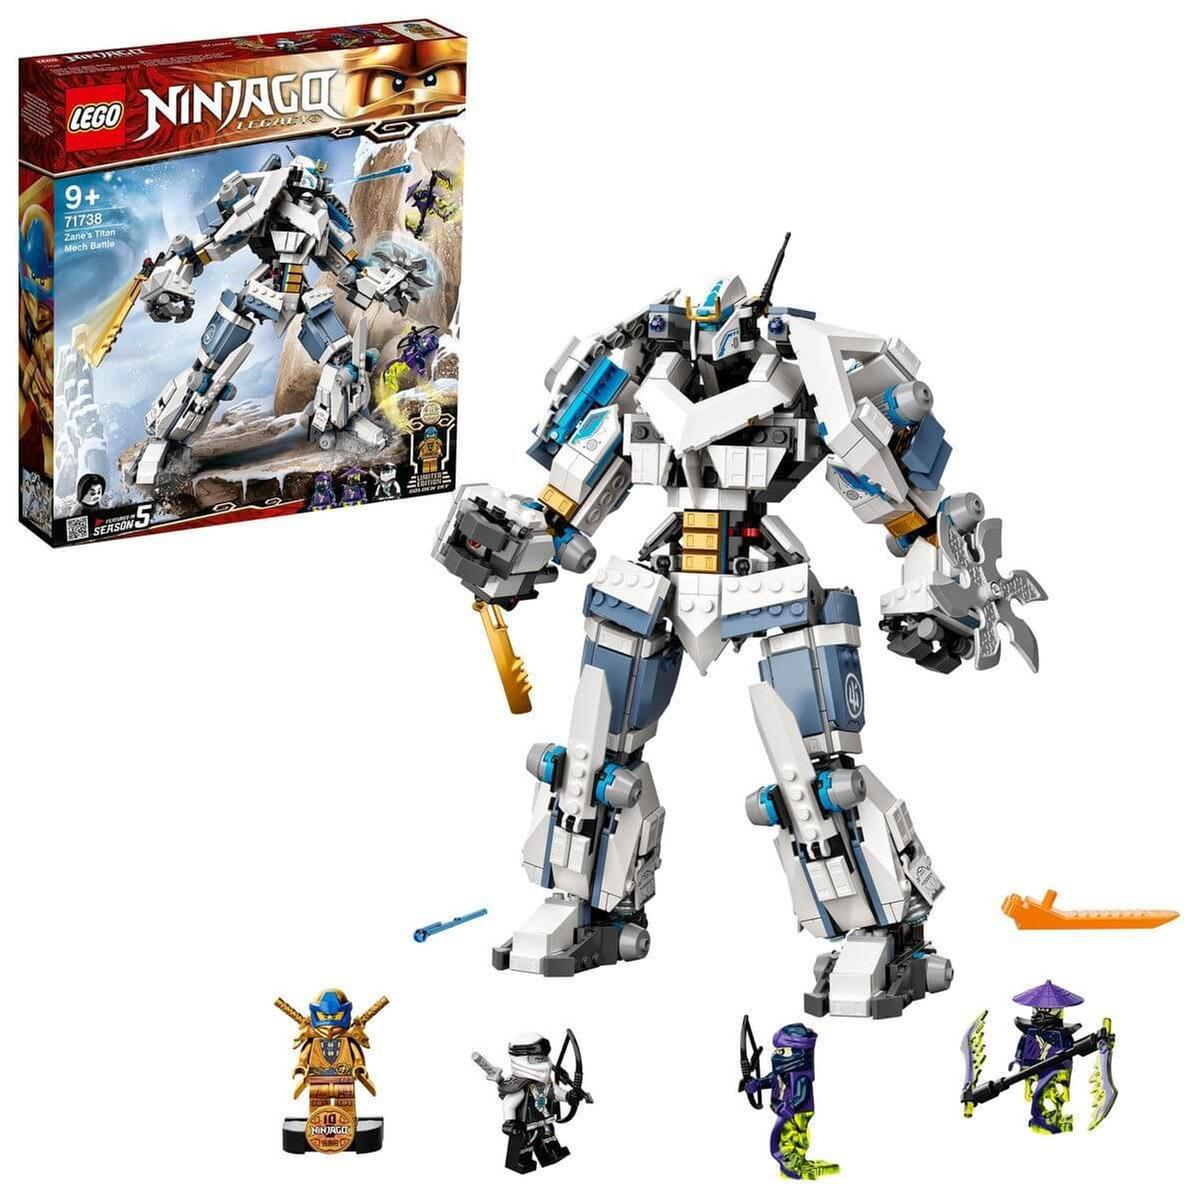 LEGO Ninjago - Combate en el Titán Robot de Zane - 71738 | Lego Ninjago |  Toys"R"Us España